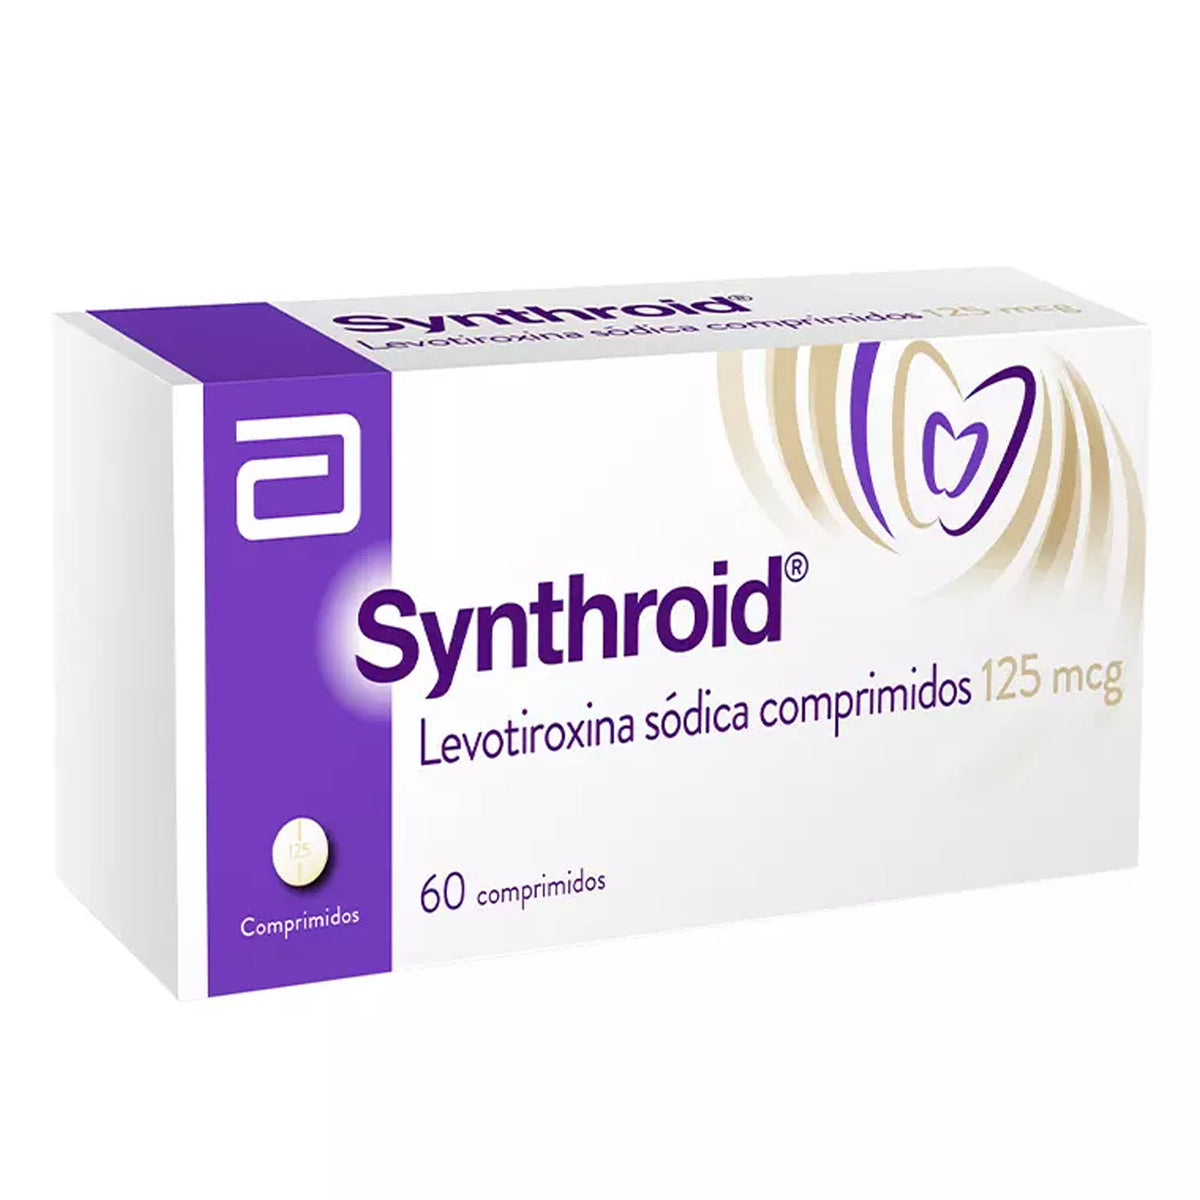 Synthroid Comprimidos 125mcg